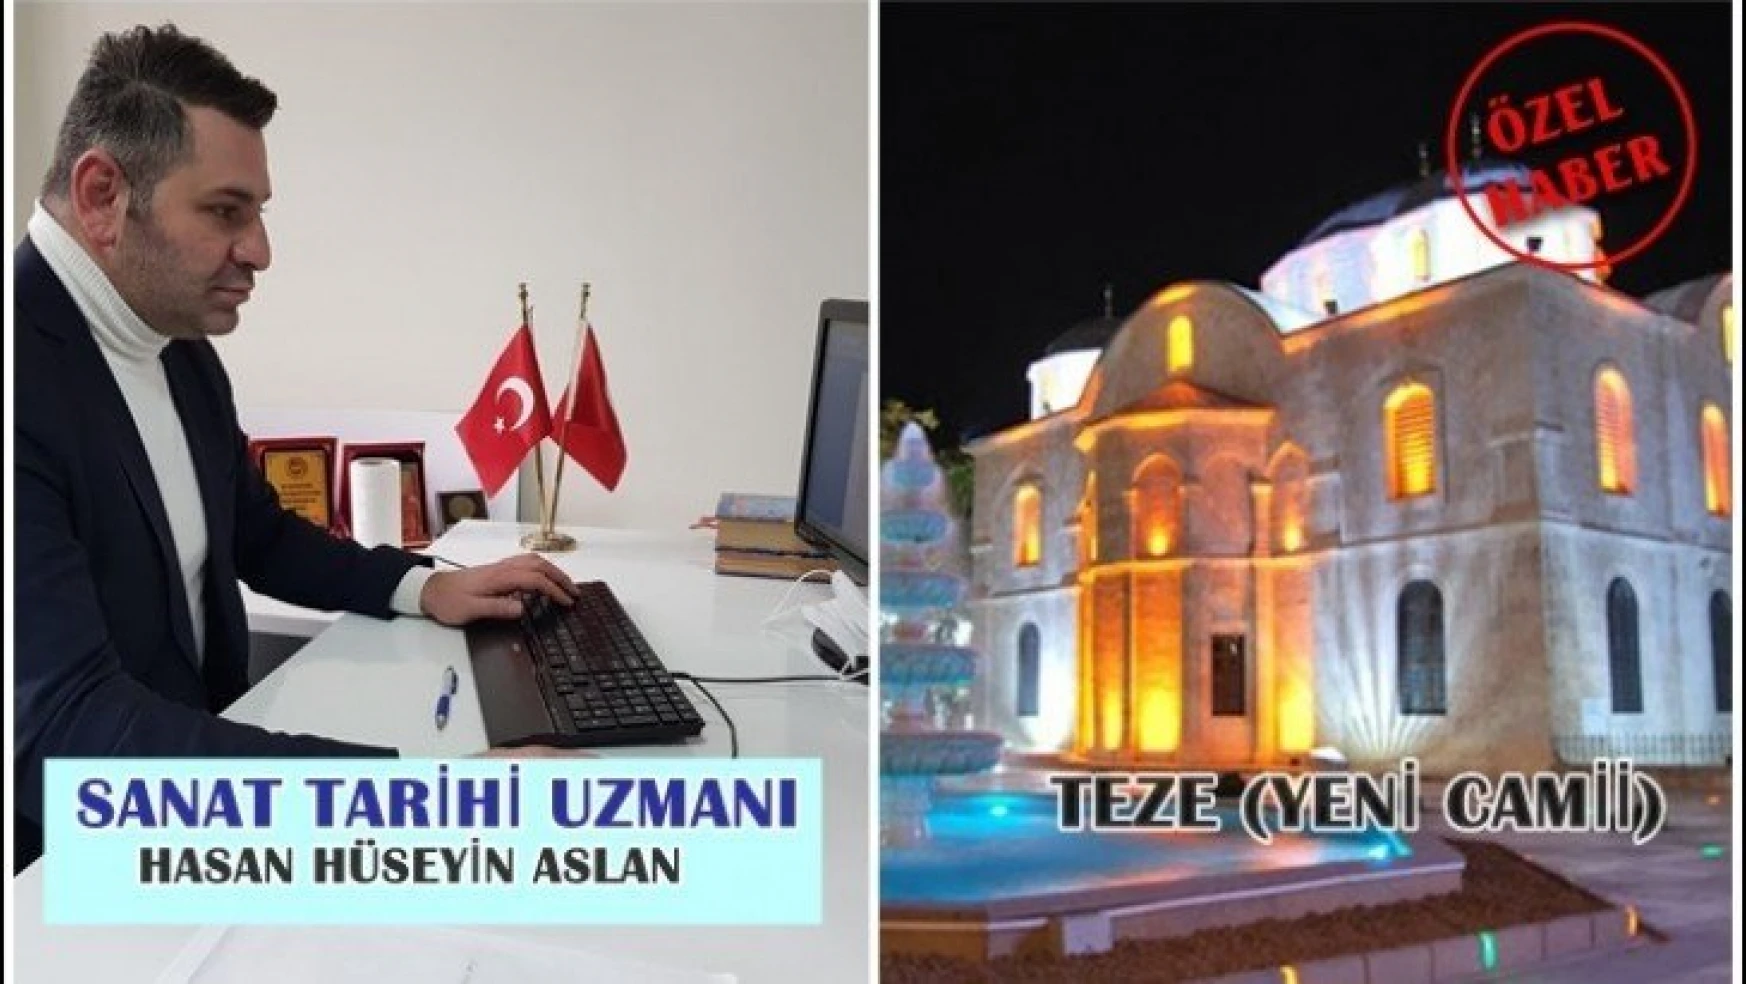 Yeni Cami/Teze Cami (Hacı Yusuf Taş Cami)